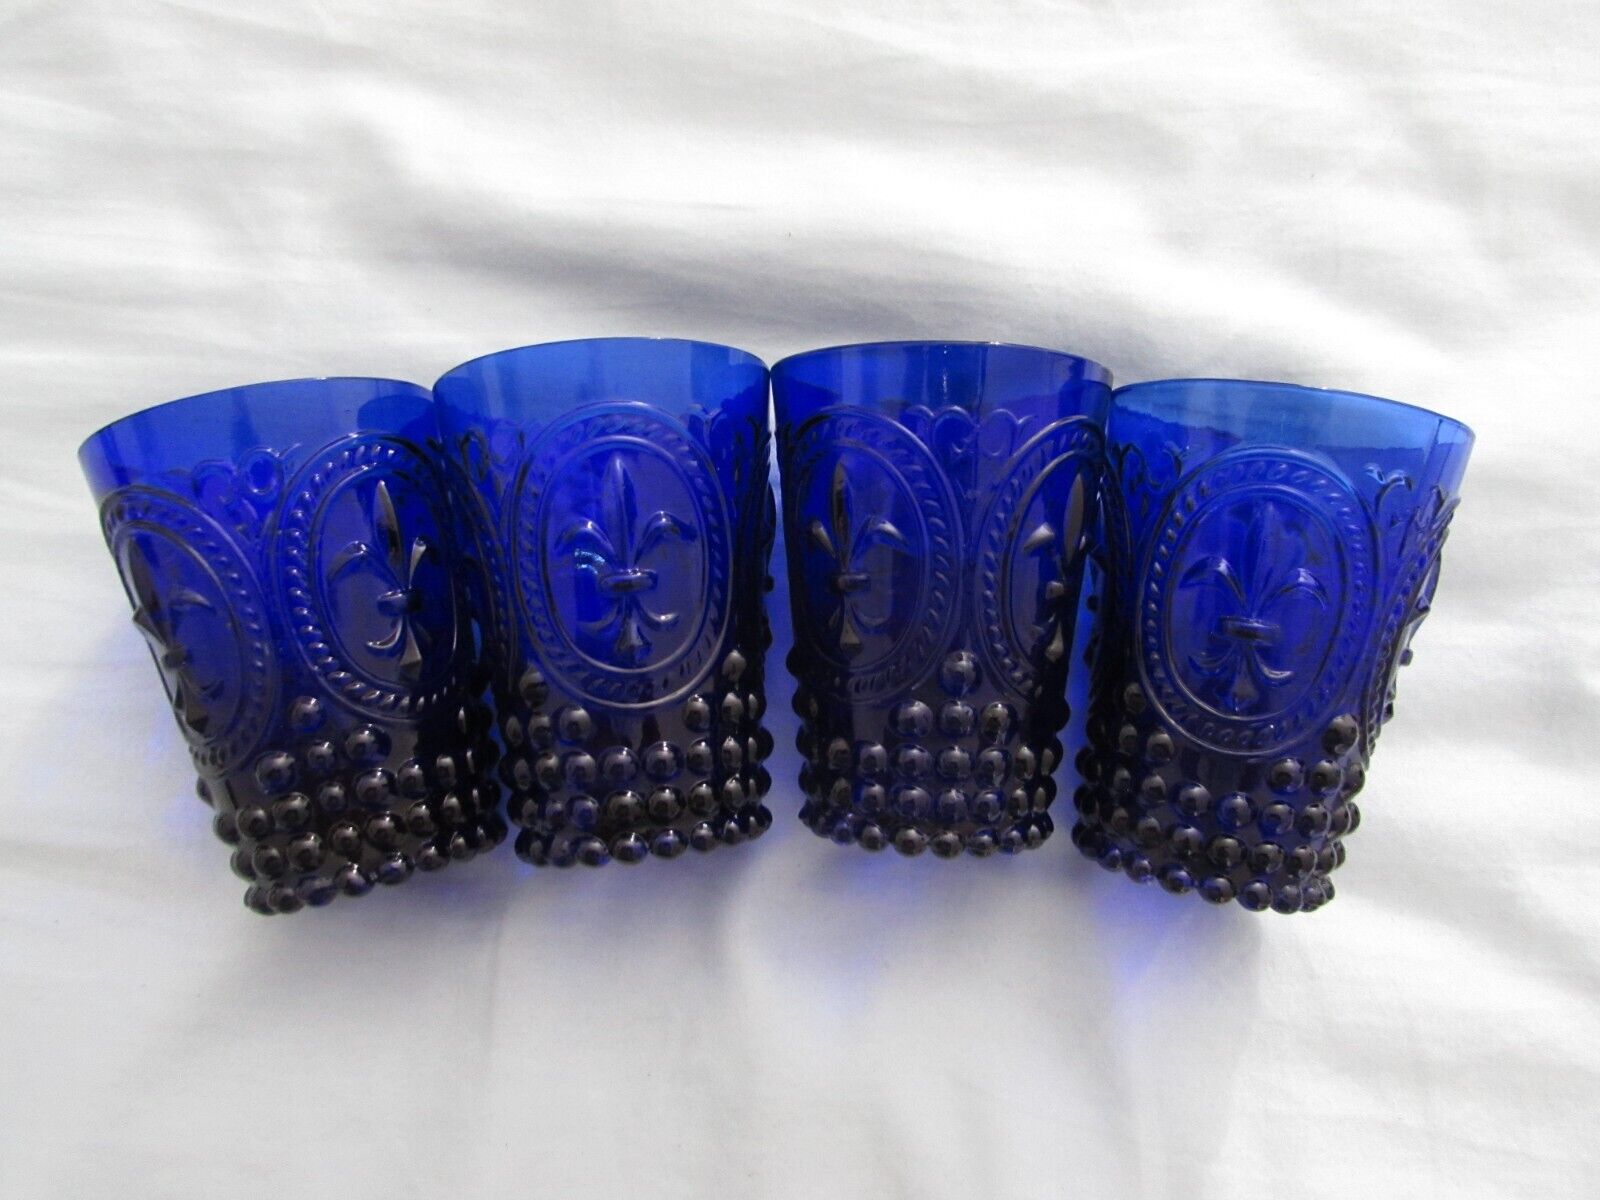 4 Anthropologie Fleur-De-Lys Tumblers Blue Glass Home Decor Cottage Cup Cobalt